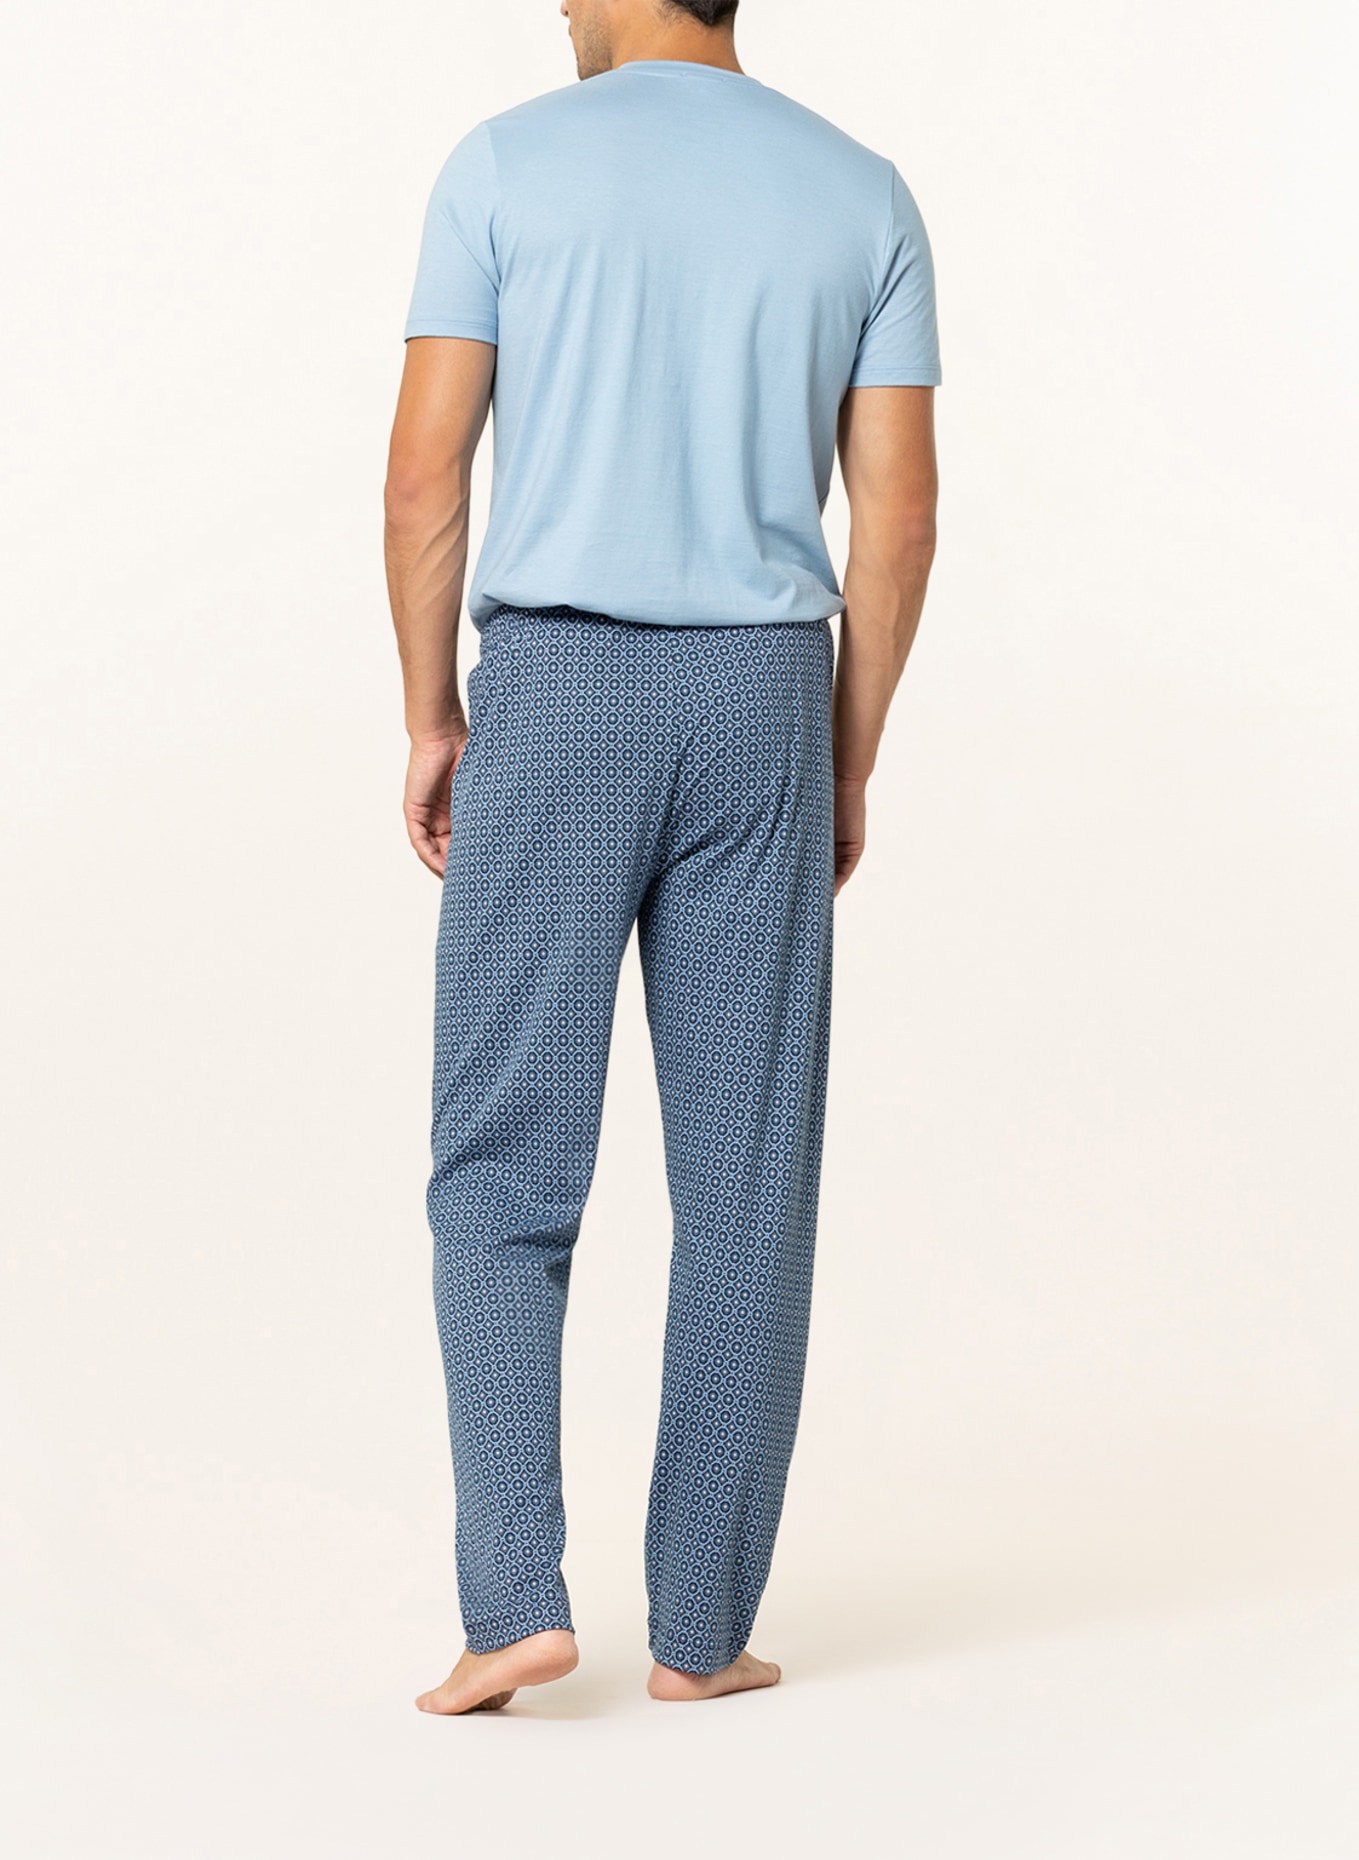 mey Lounge pants series VESANTO, Color: DARK BLUE/ LIGHT BLUE (Image 3)